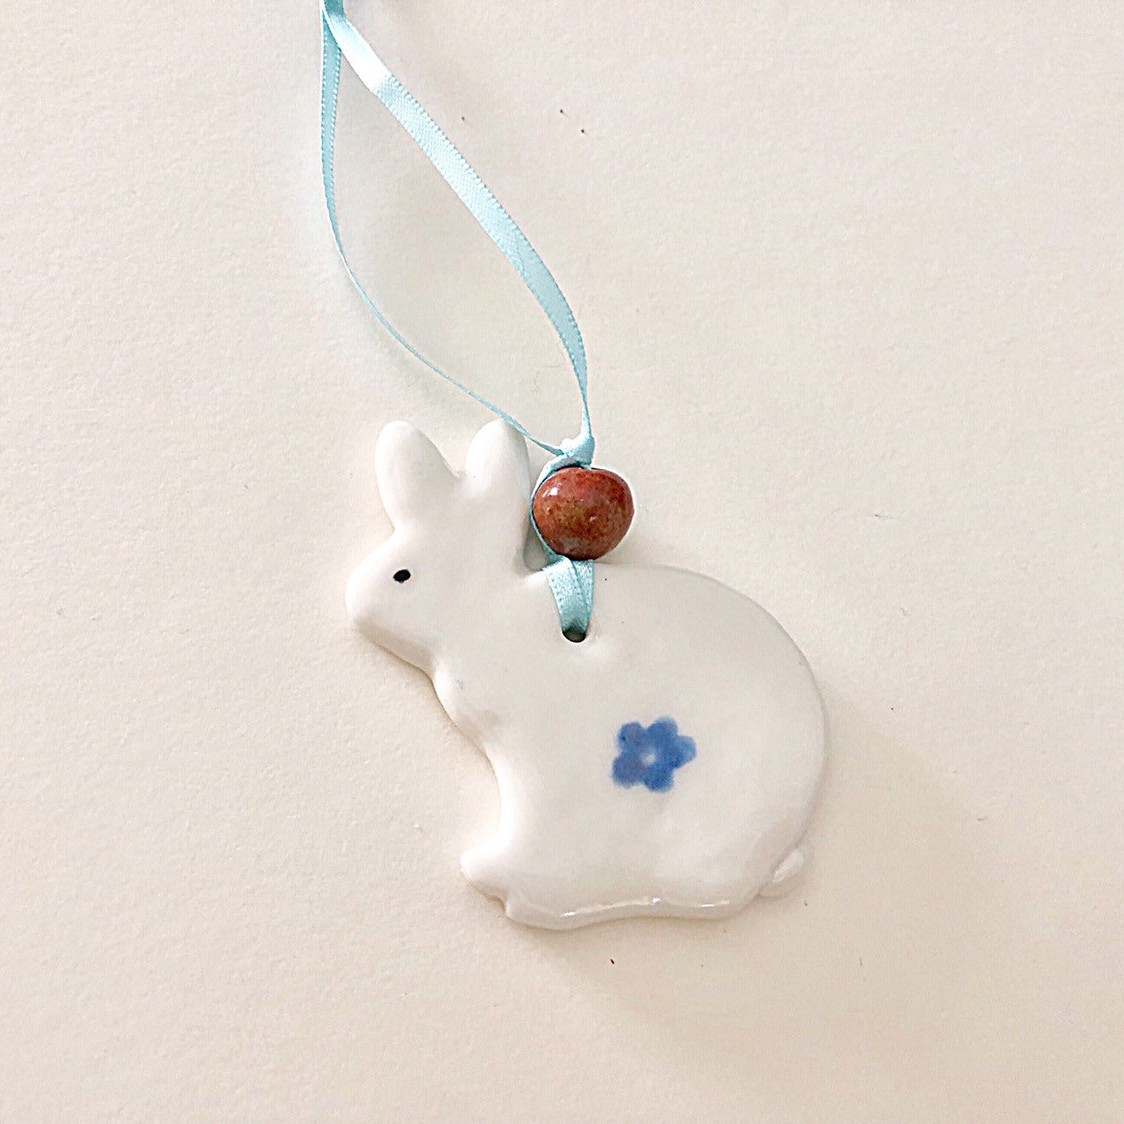 White Rabbit Wallhanger - Porcelain